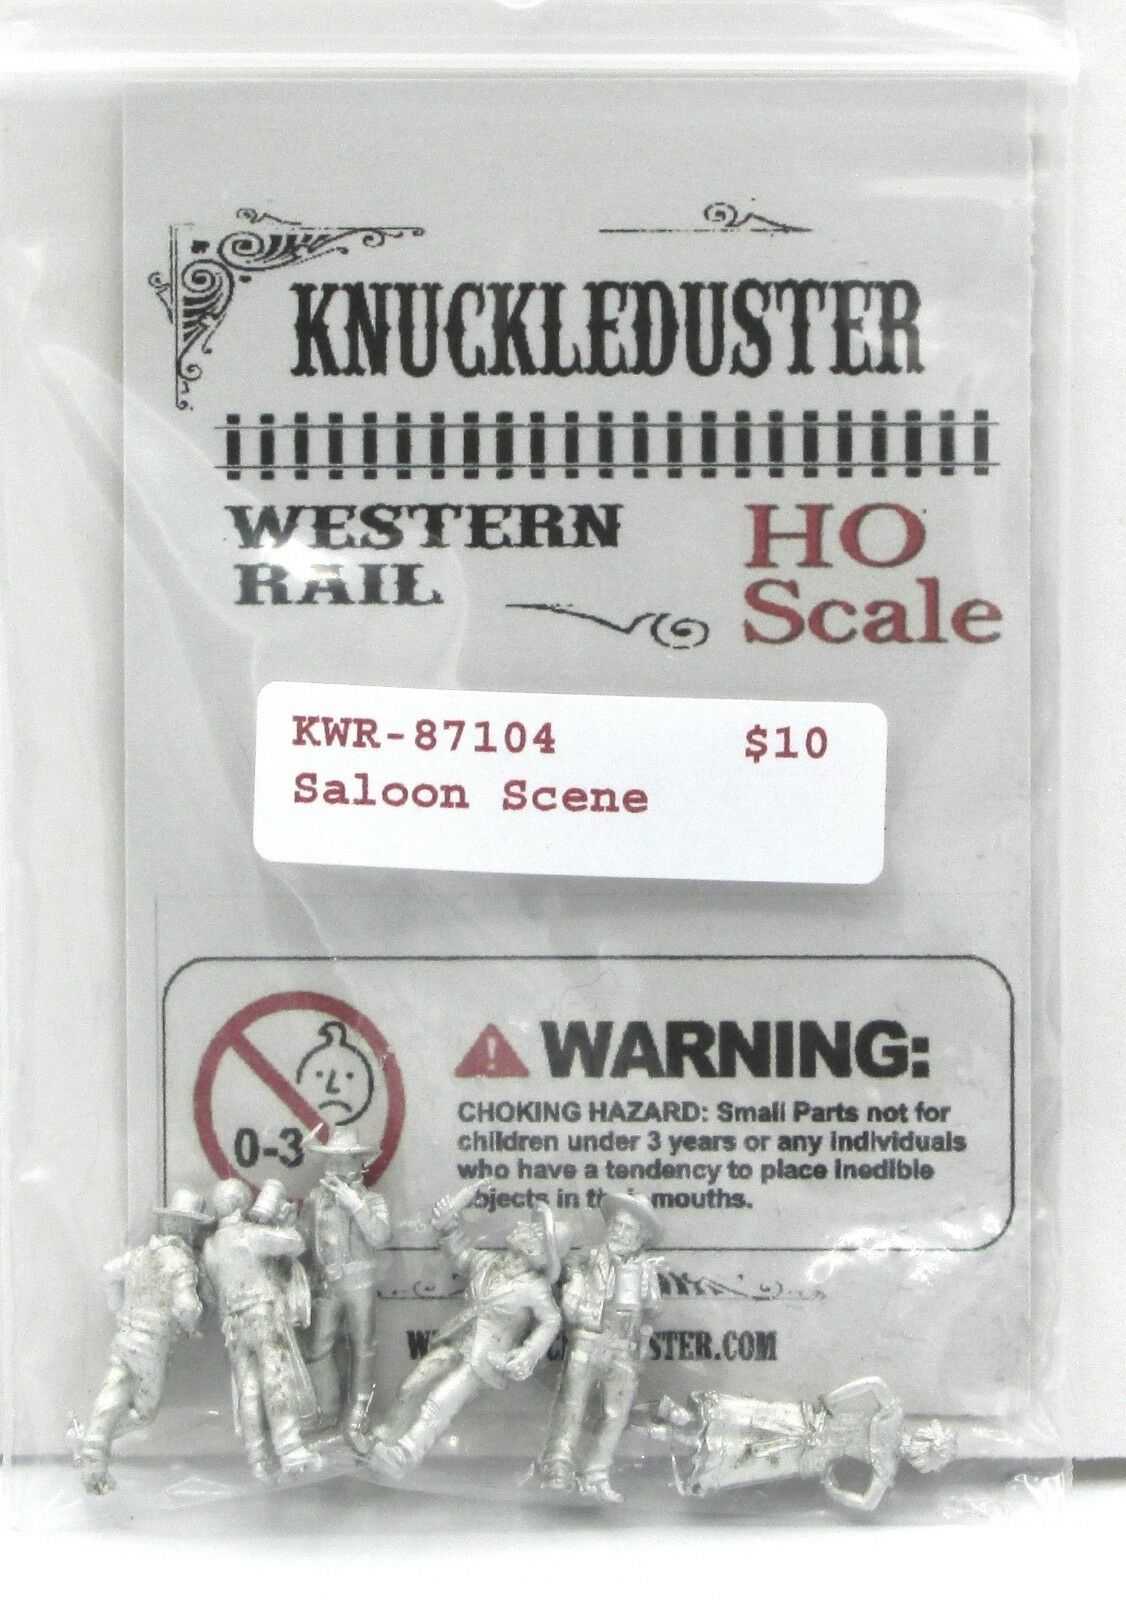 Knuckleduster Kwr-87104 Saloon Scene (ho Scale) Old West Civilians Townsfolk Nib